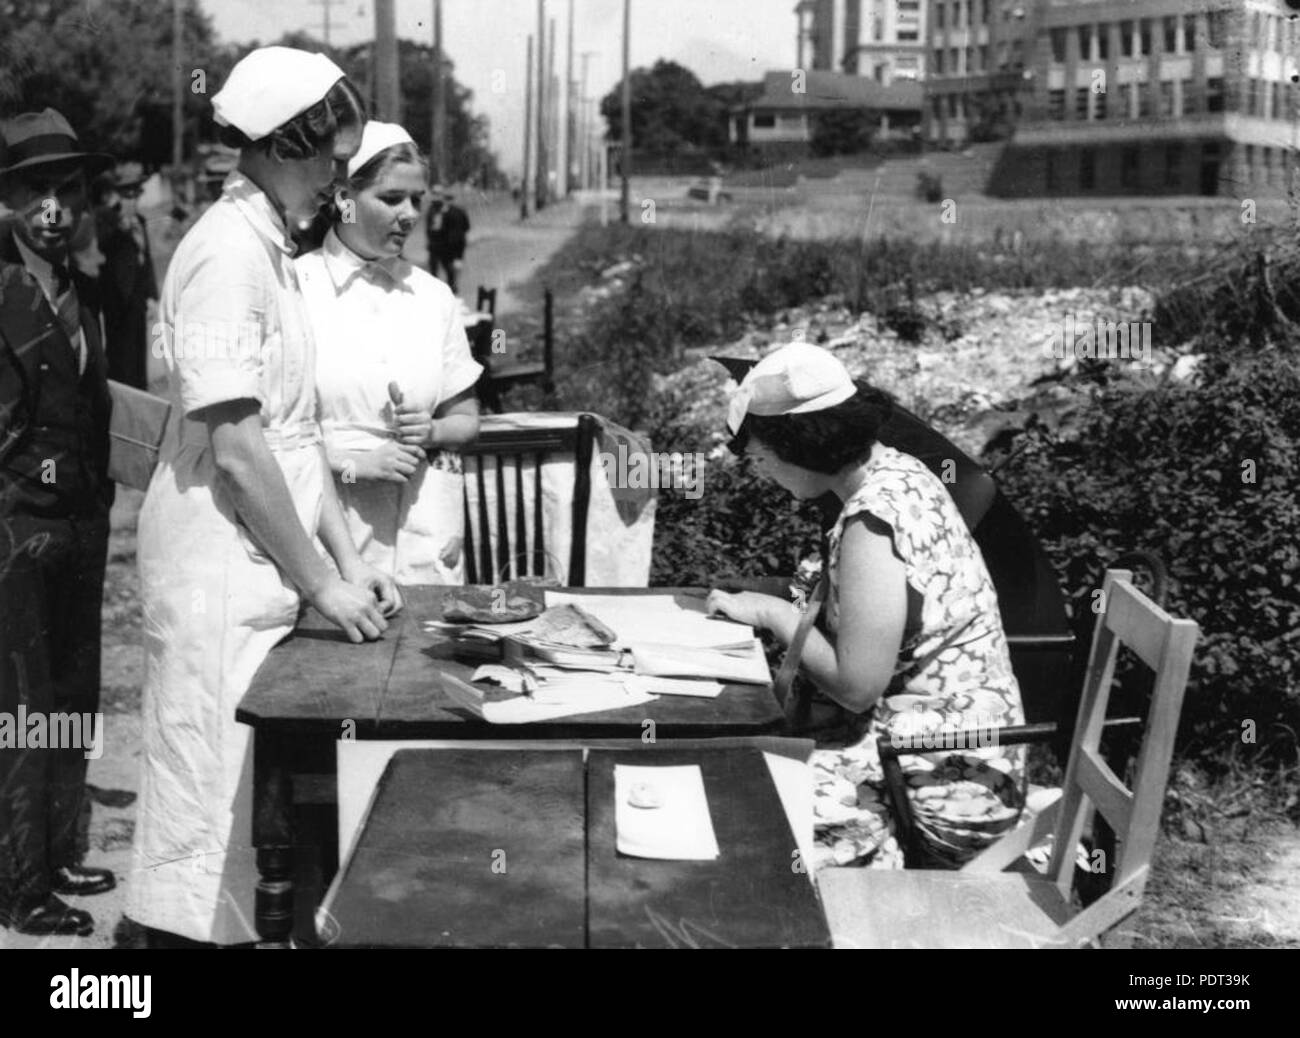 214 1 125759 StateLibQld enfermeras votando el Día de la elección, Brisbane, 1938 Foto de stock